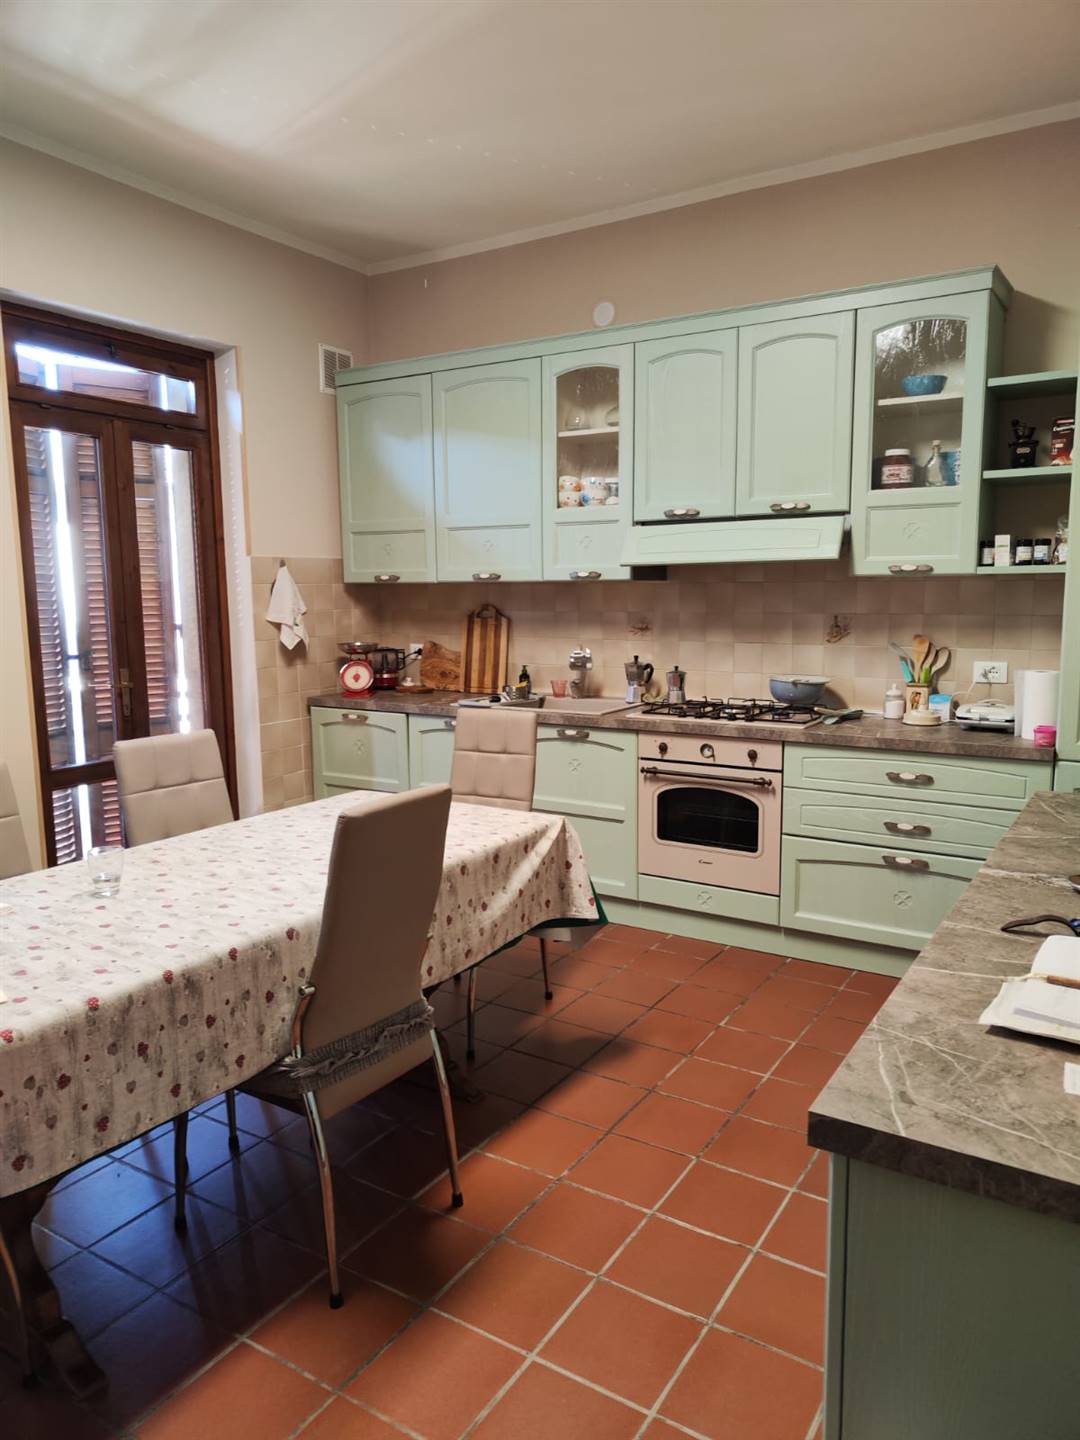 Appartamento in vendita a Mortara, 4 locali, prezzo € 165.000 | CambioCasa.it